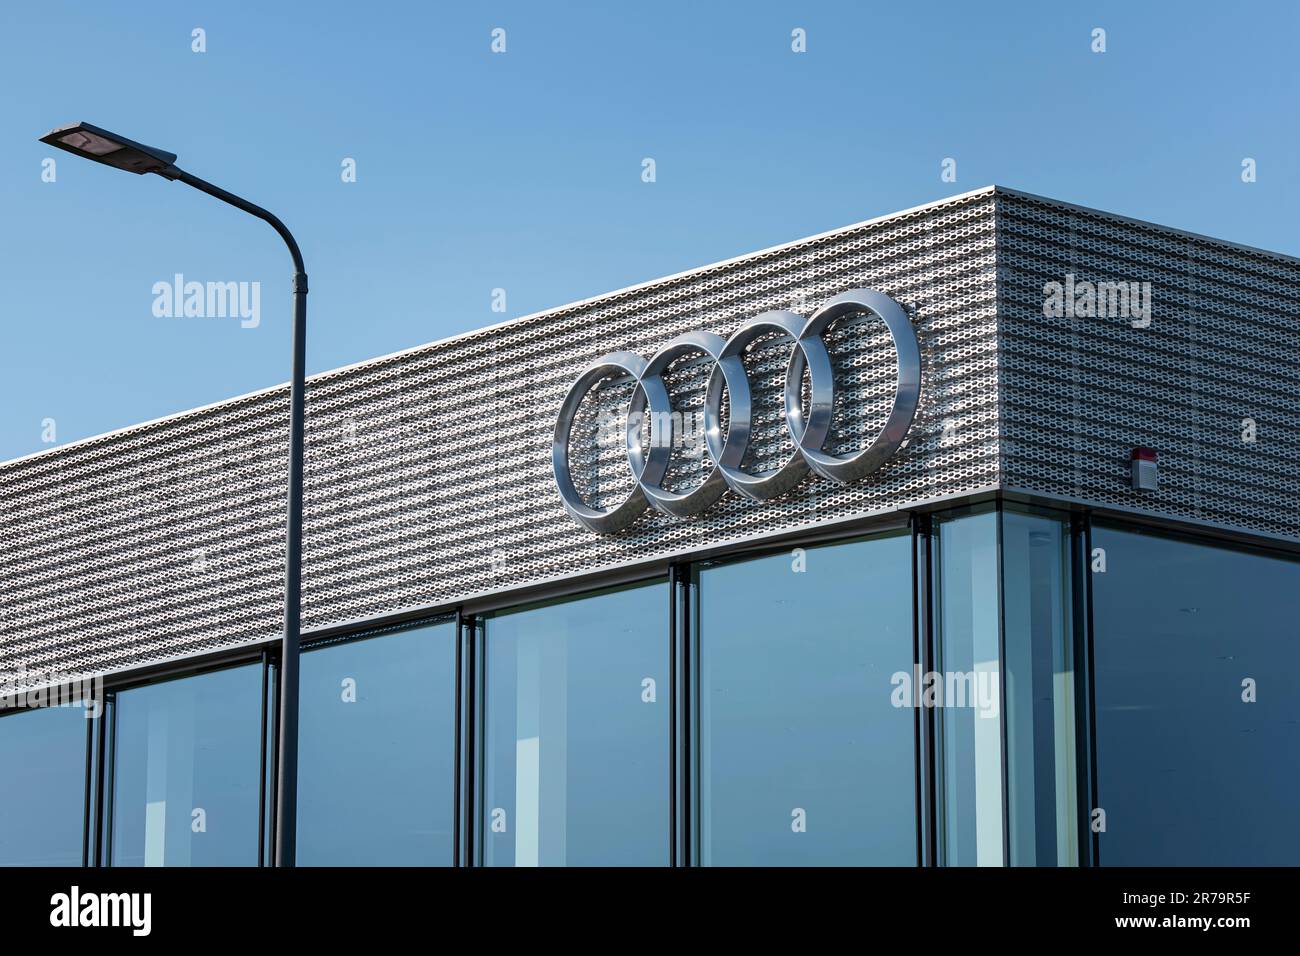 Détail d'un concessionnaire automobile du constructeur automobile Audi Banque D'Images